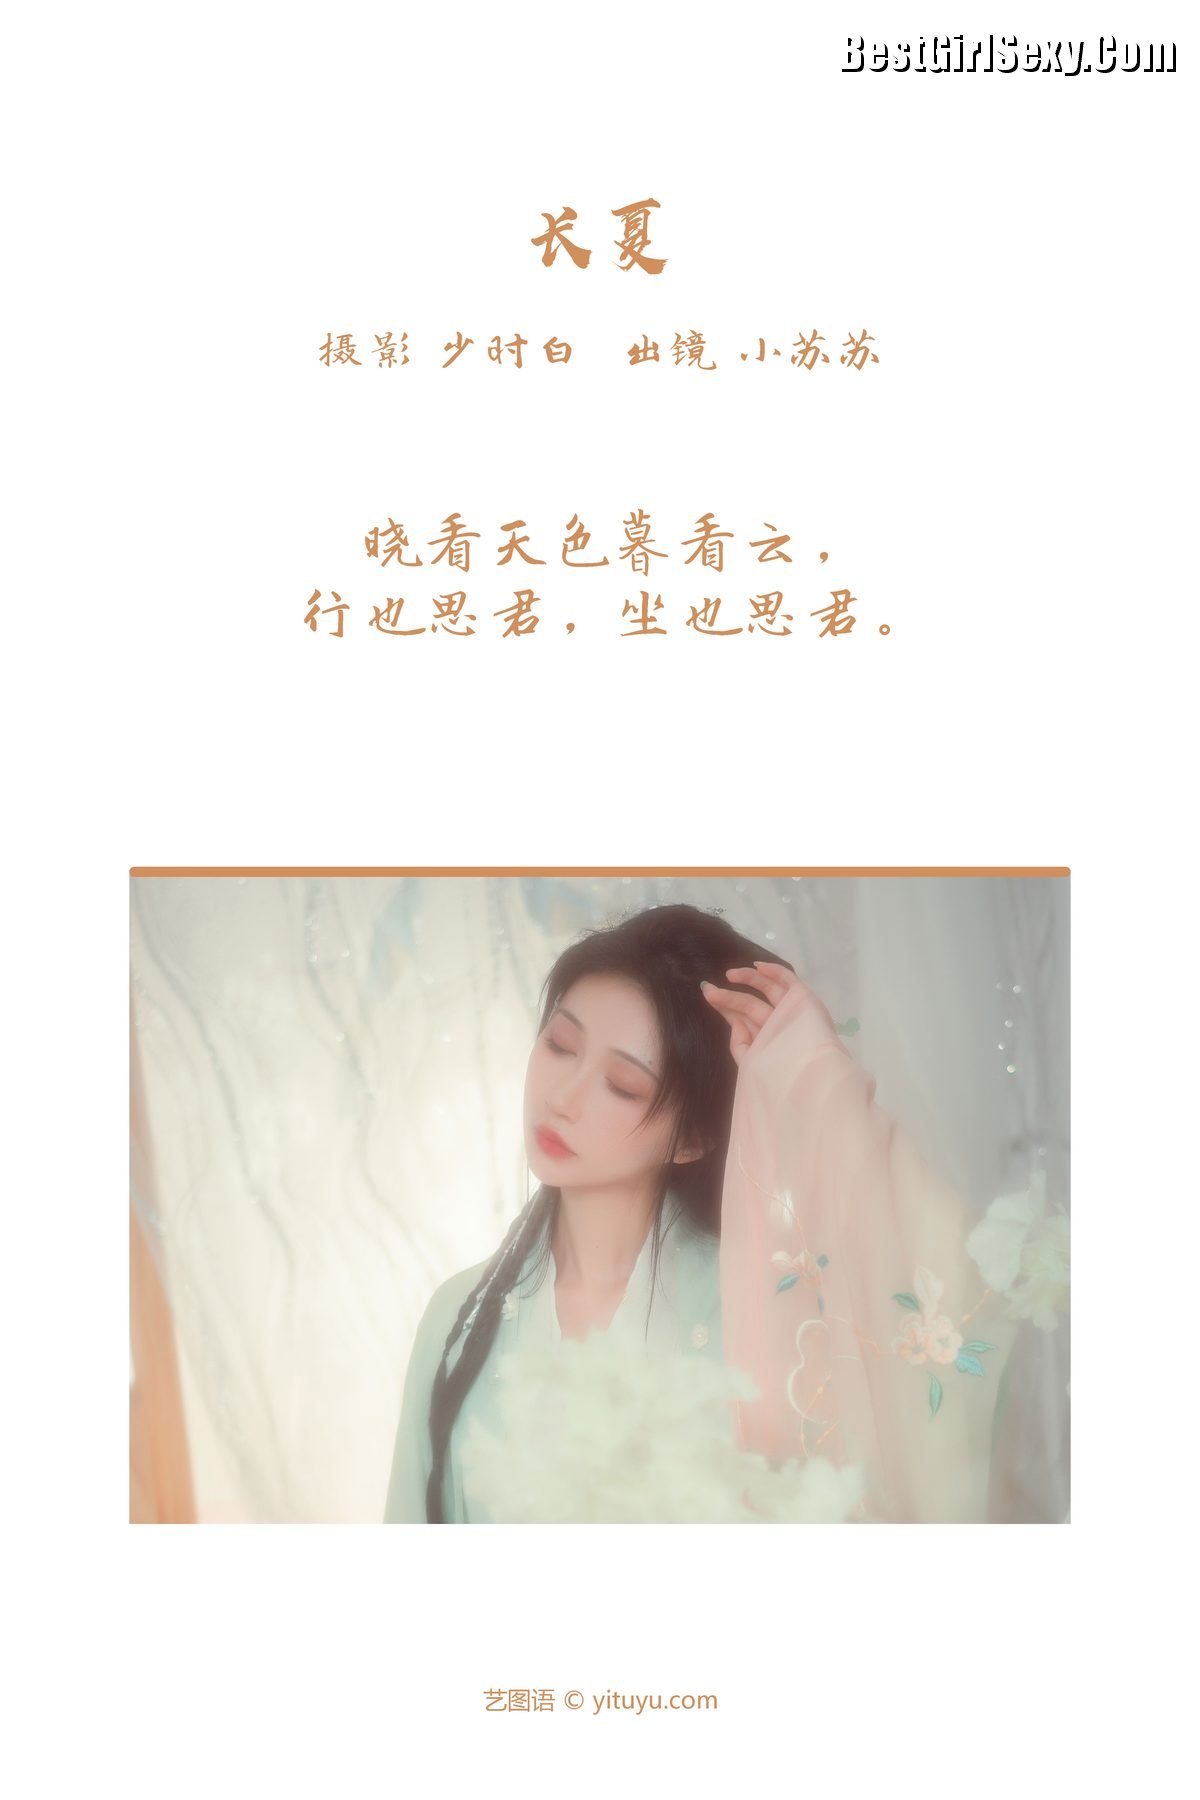 YiTuYu艺图语 Vol 3796 Qi Luo Sheng De Xiao Su Su 0002 9159856351.jpg